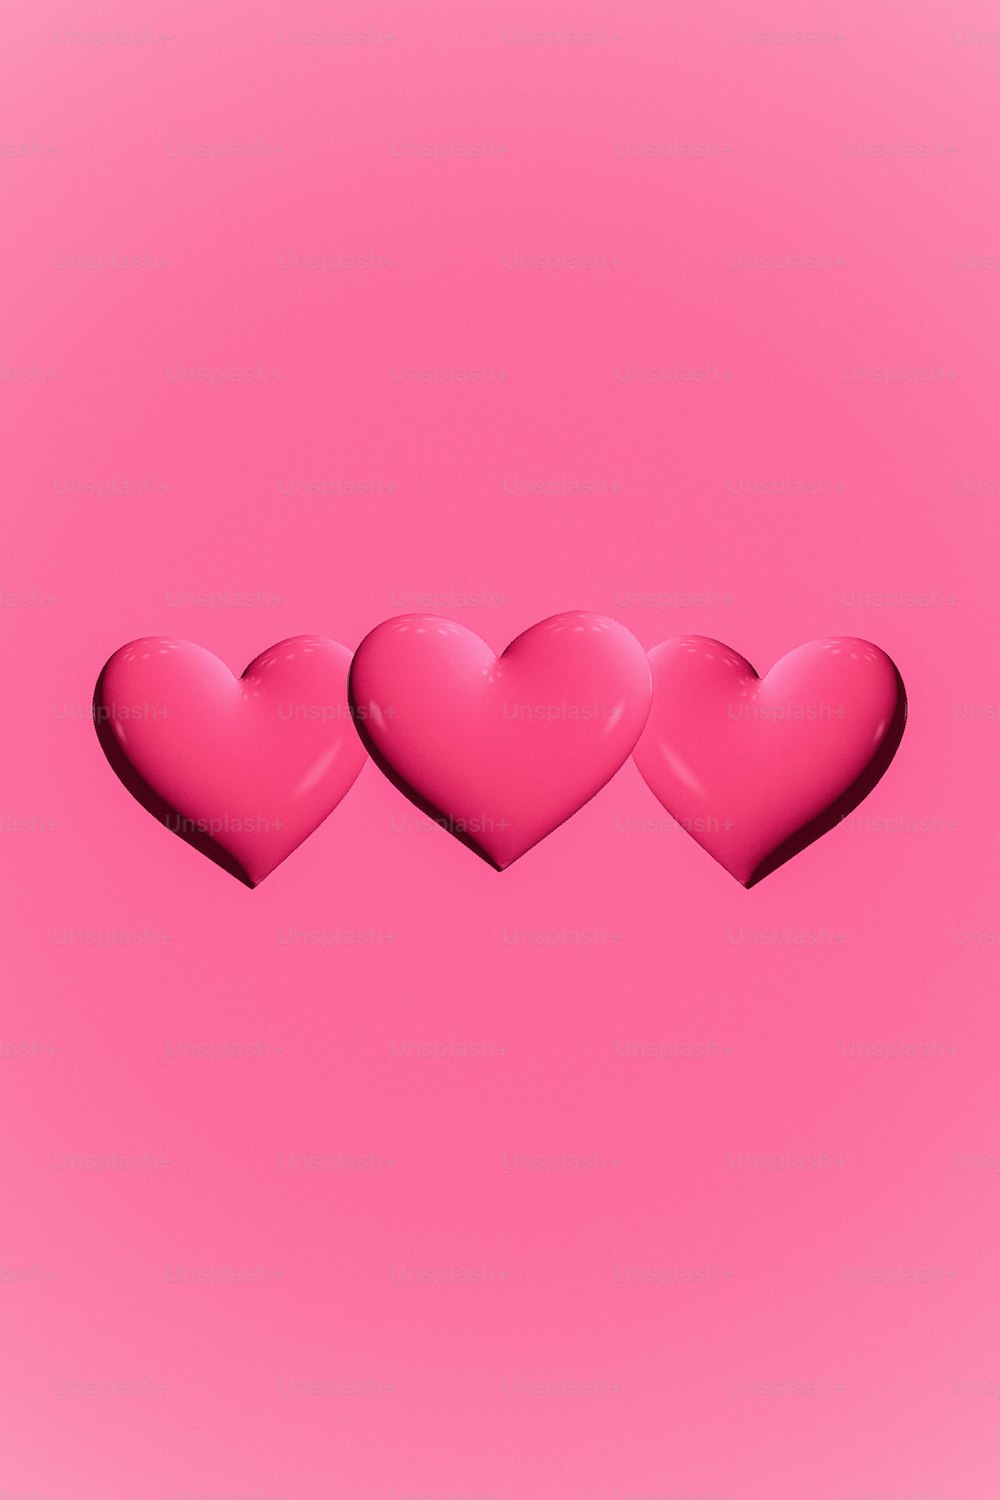 três corações cor-de-rosa em um fundo cor-de-rosa